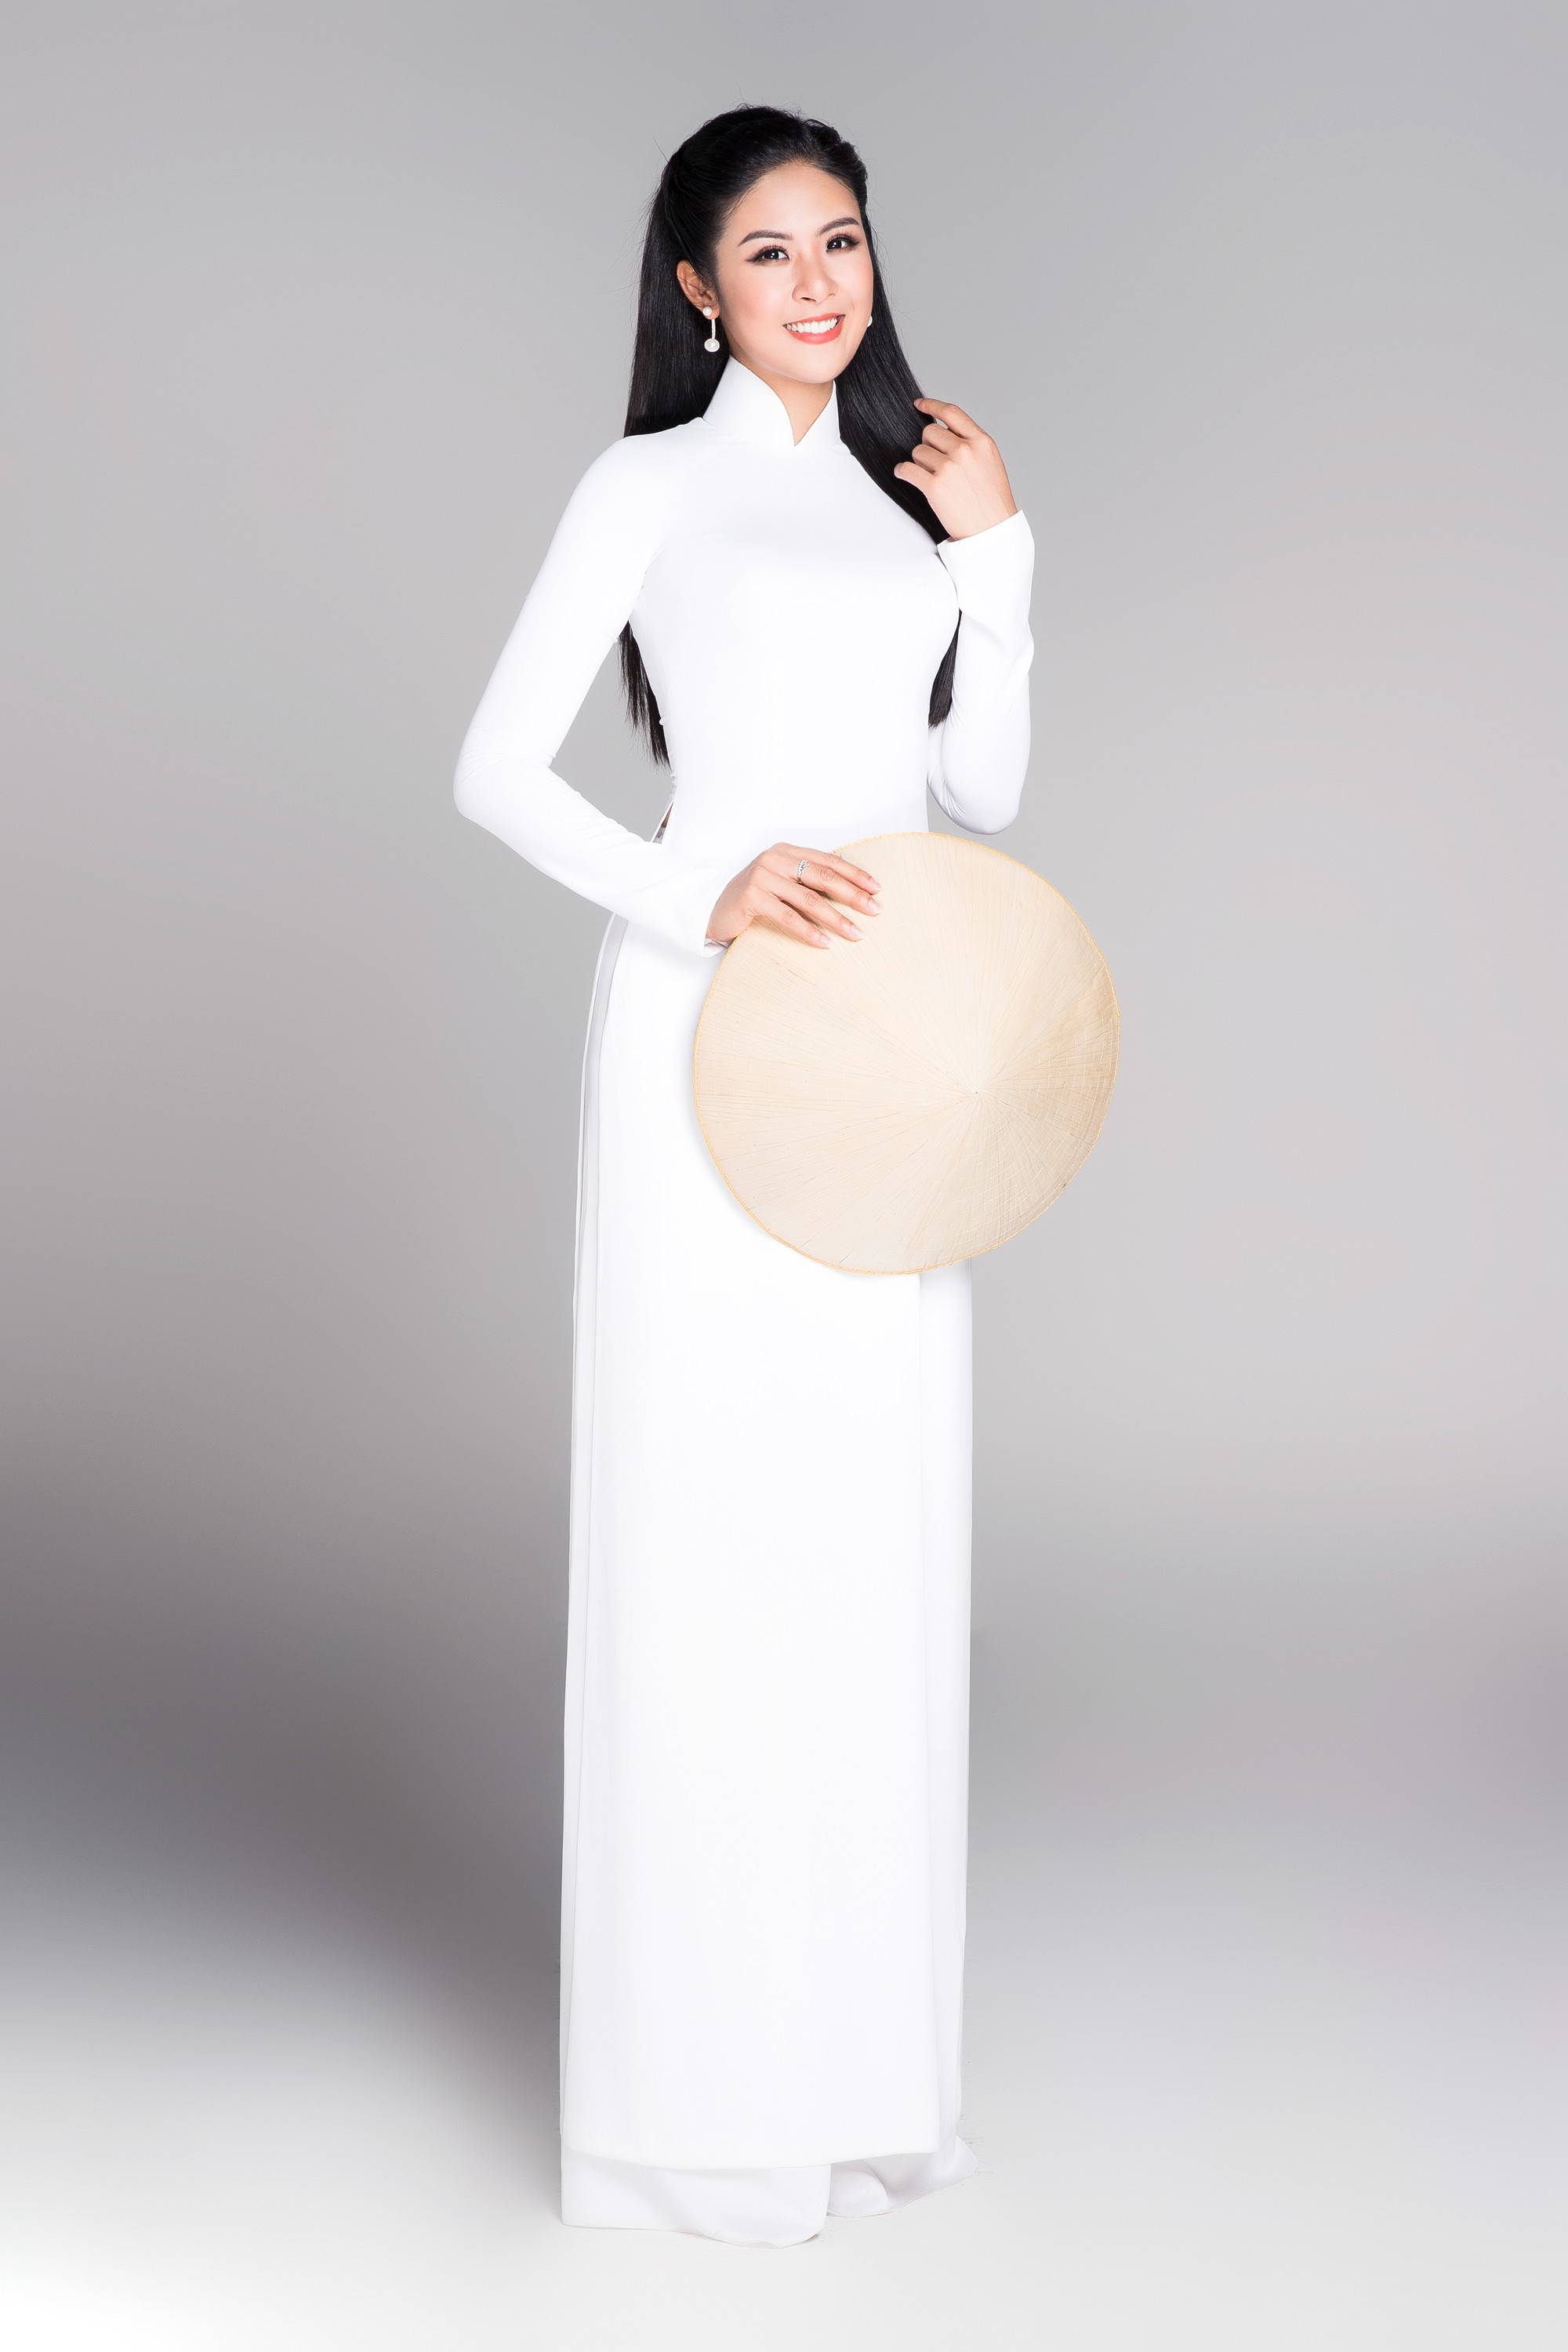 Không váy áo gợi cảm, Hoa hậu Kỳ Duyên, Đặng Thu Thảo lại gợi nhớ cả bầu trời thanh xuân khi diện áo dài trắng nữ sinh - Ảnh 7.